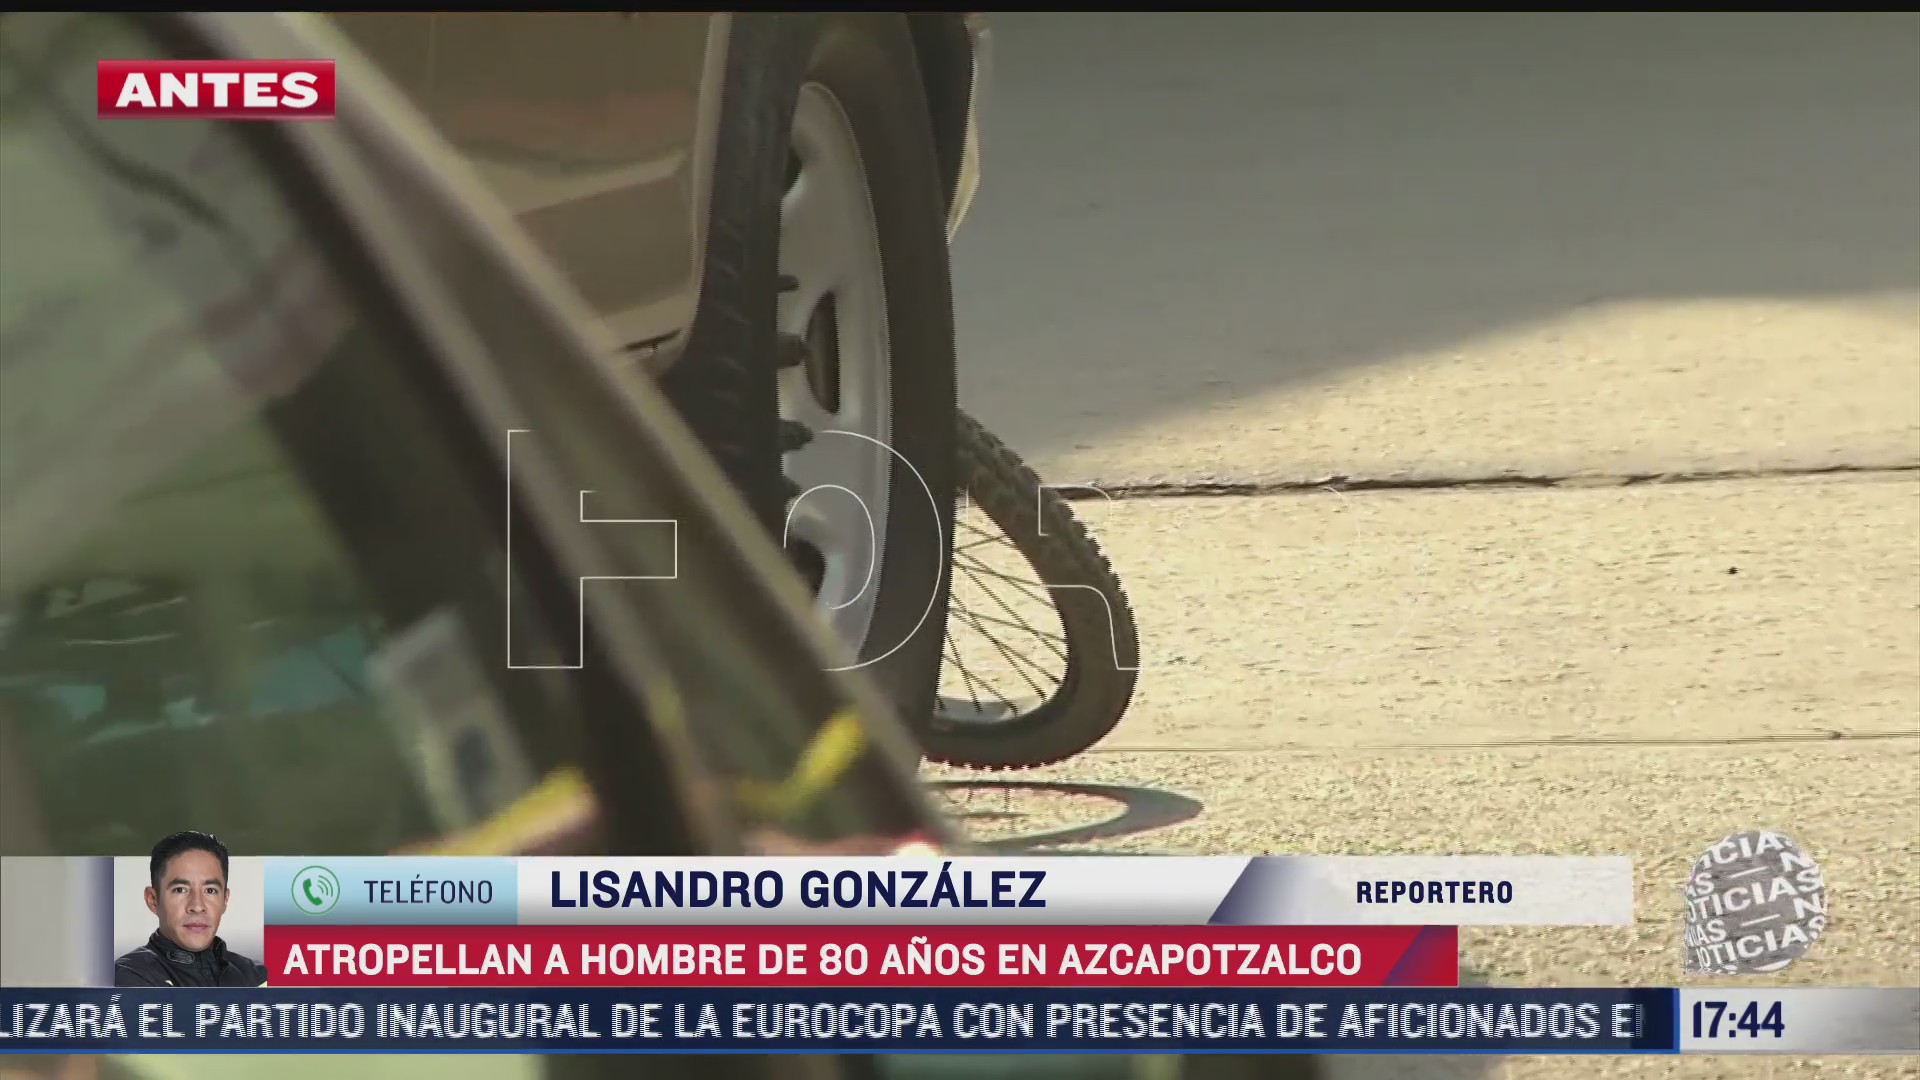 un ciclista de 80 anos de edad murio atropellado en la alcaldia azcapotzalco el conductor estaba distraido con su telefono celular